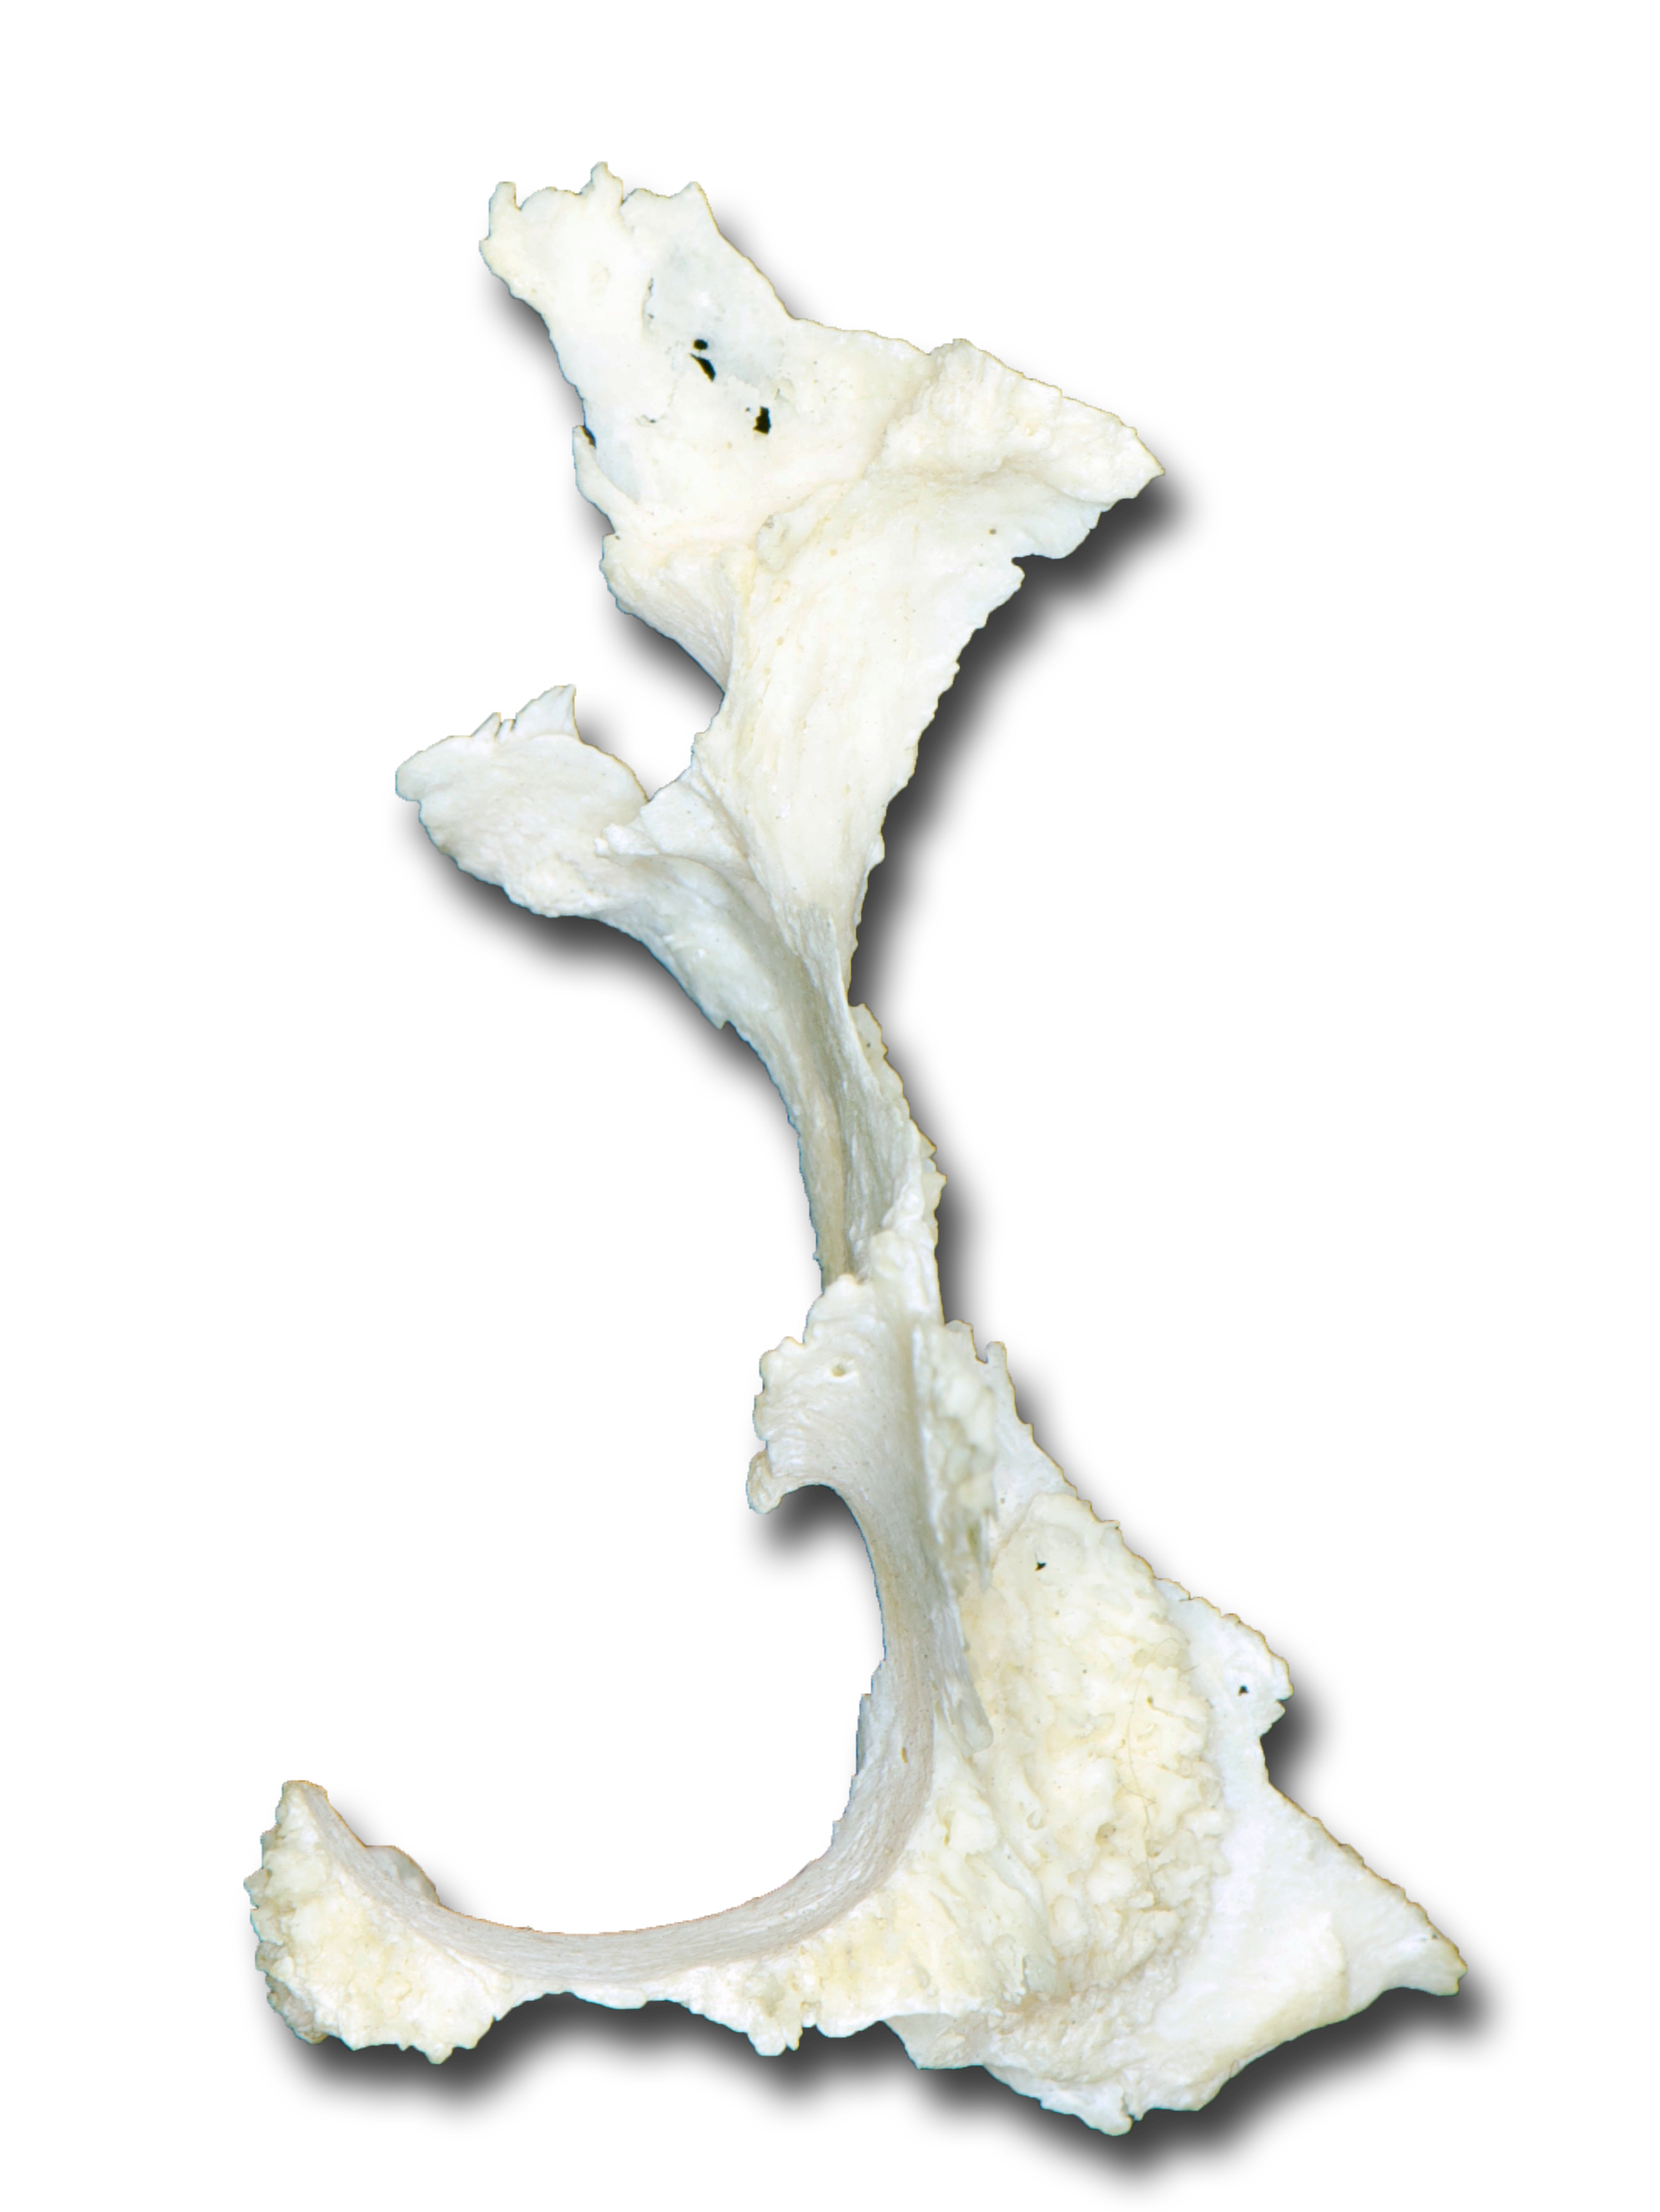 Palatine Bone - Anterior View